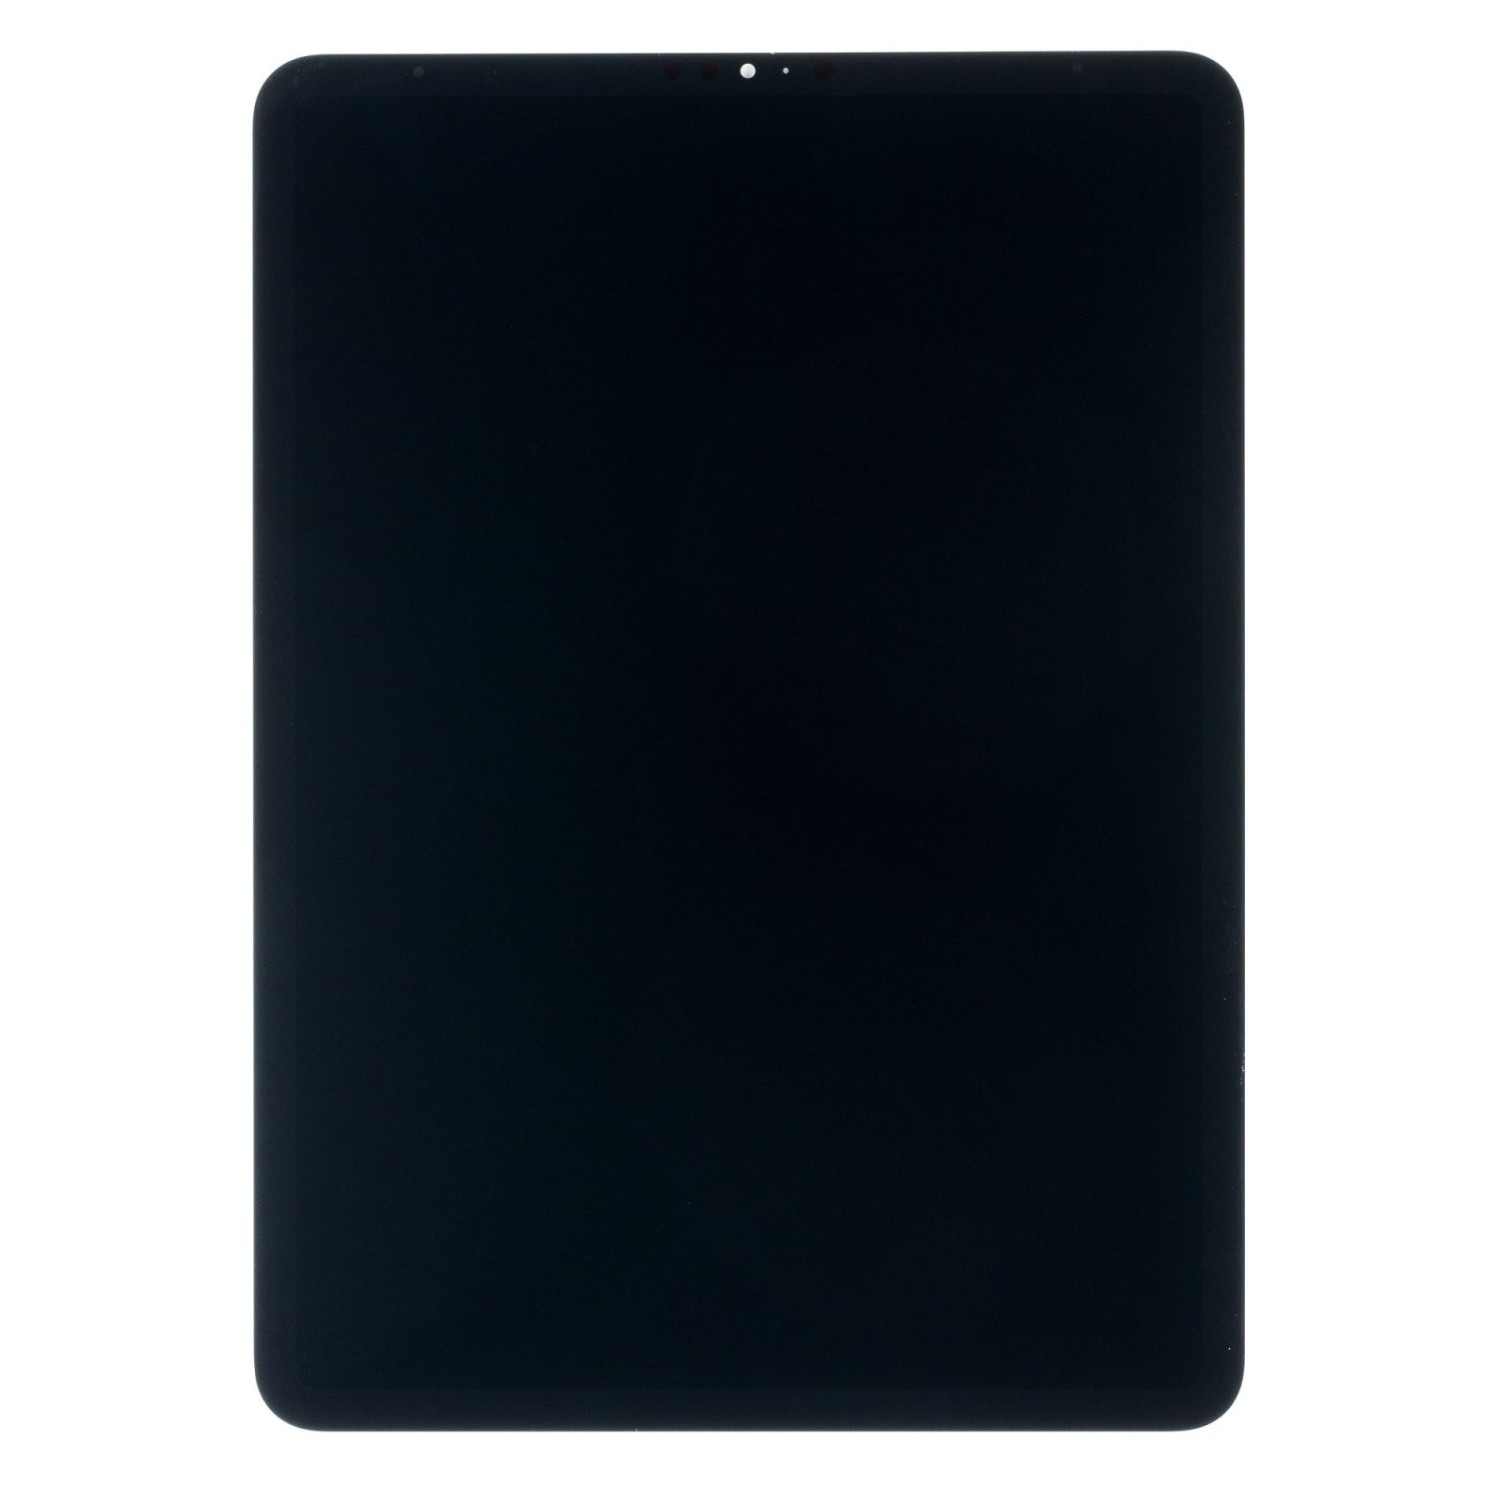 LCD + dotyková deska pro iPad Pro 11 2020, black + DOPRAVA ZDARMA